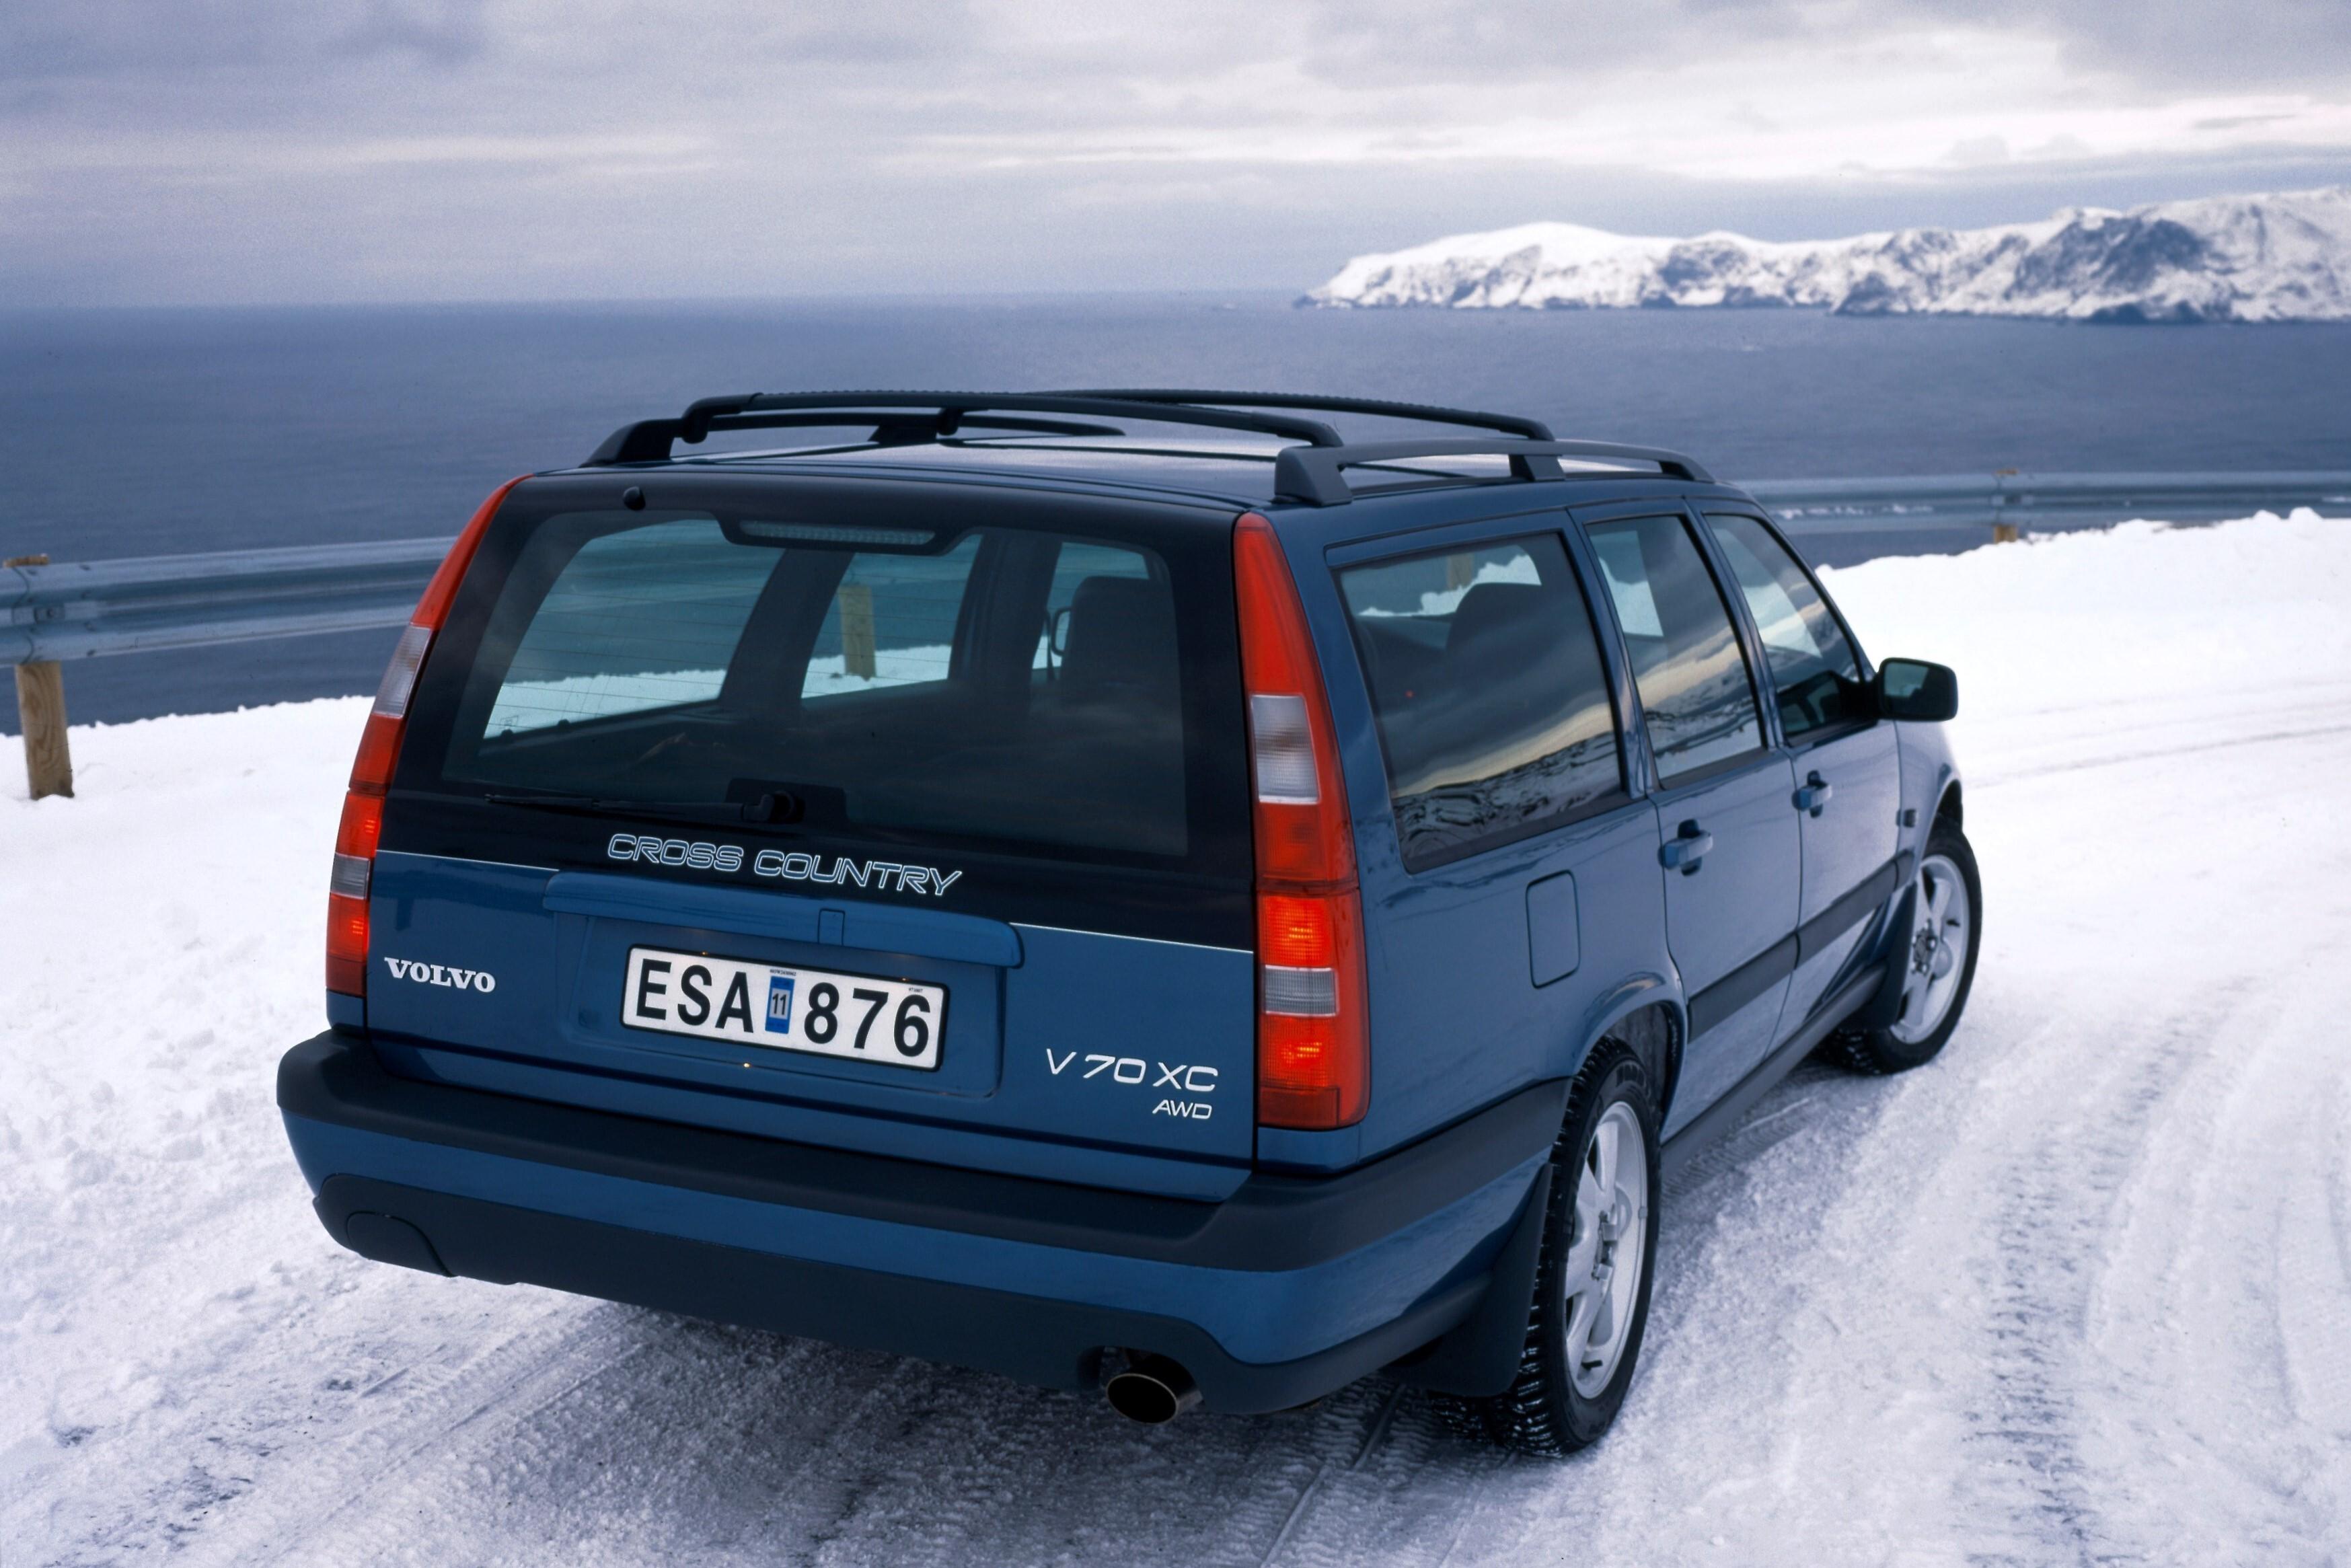 Универсал 1 7. Volvo v70xc 1998. Volvo v70xc. 1997 Volvo v70 XC. Вольво v70 универсал 1997.